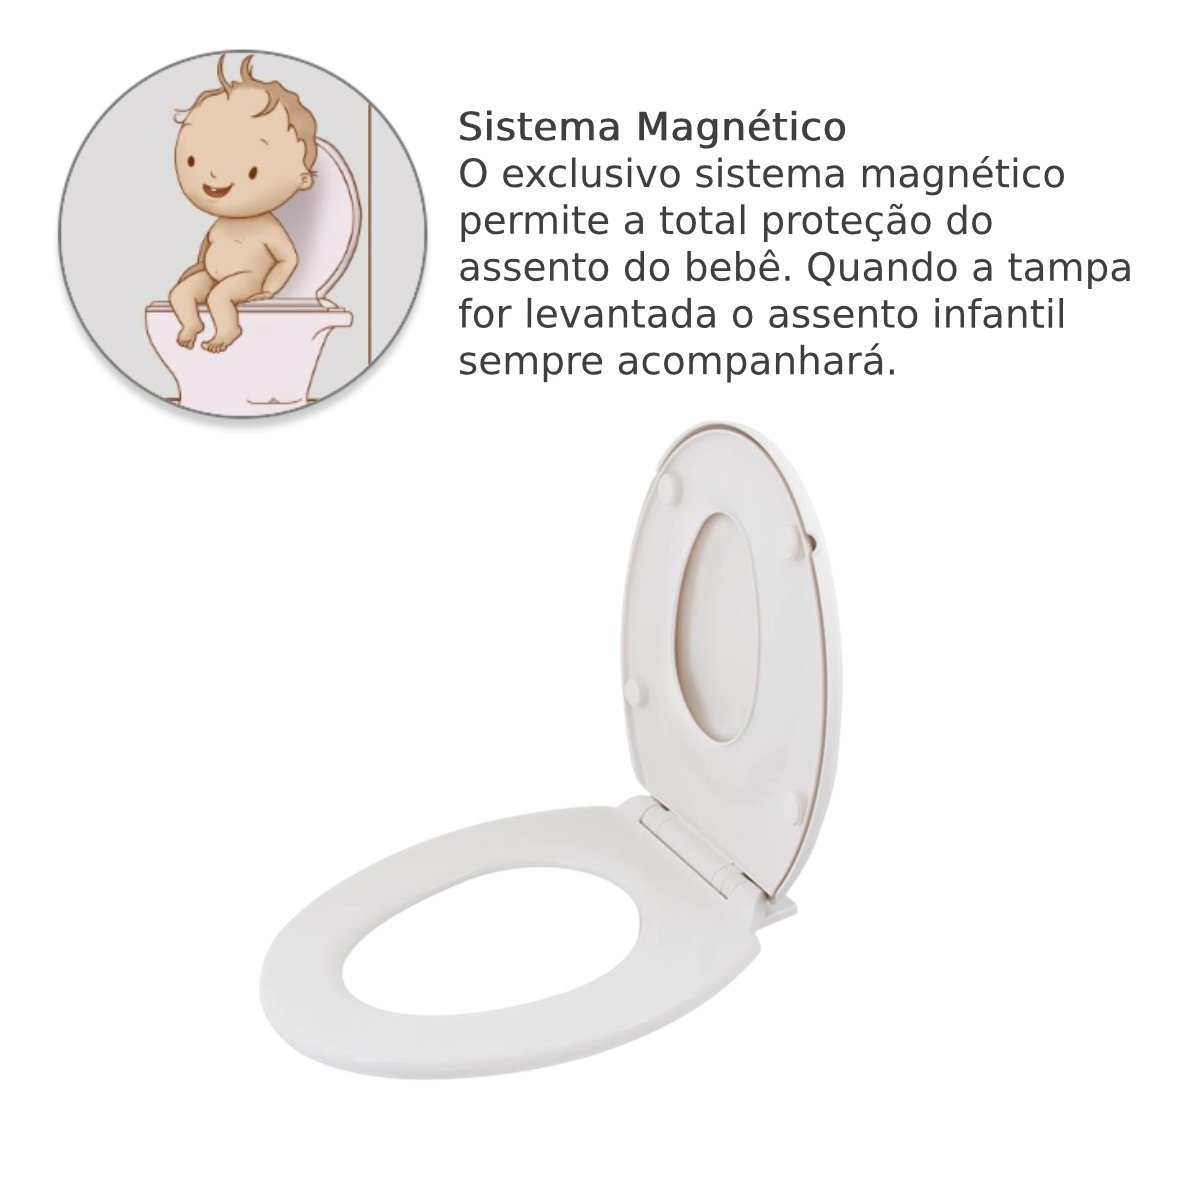 Assento Vaso Sanitário Magnético - Bebê 2 em 1 Infantil e Adulto - 5